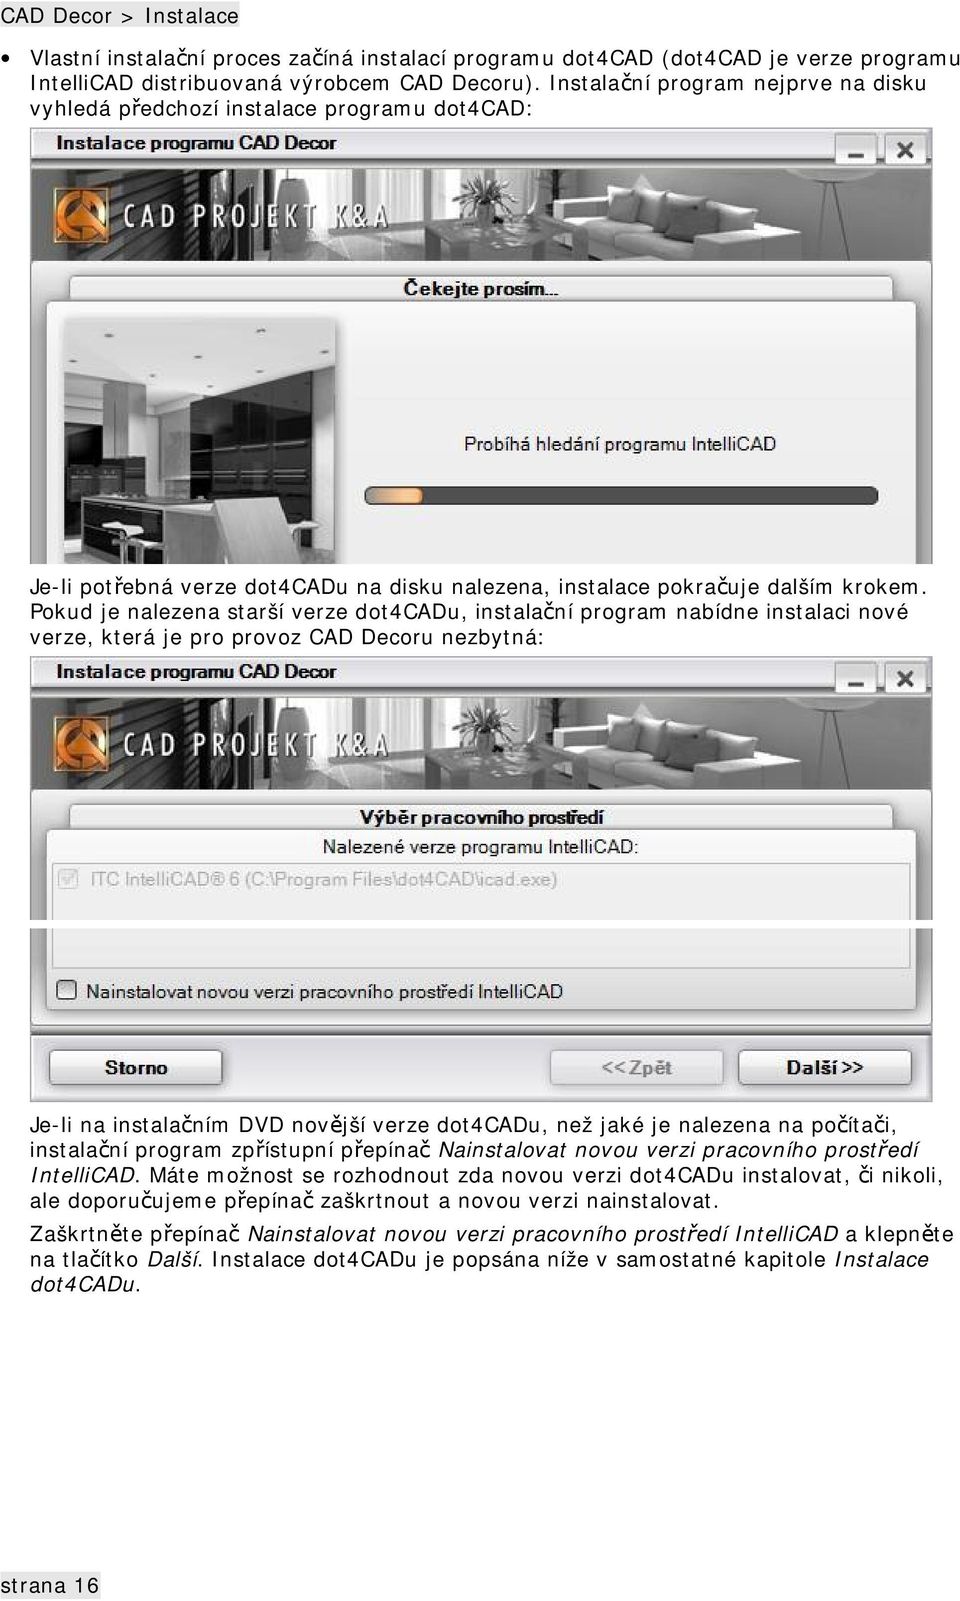 Pokud je nalezena starší verze dot4cadu, instalační program nabídne instalaci nové verze, která je pro provoz CAD Decoru nezbytná: Je-li na instalačním DVD novější verze dot4cadu, než jaké je